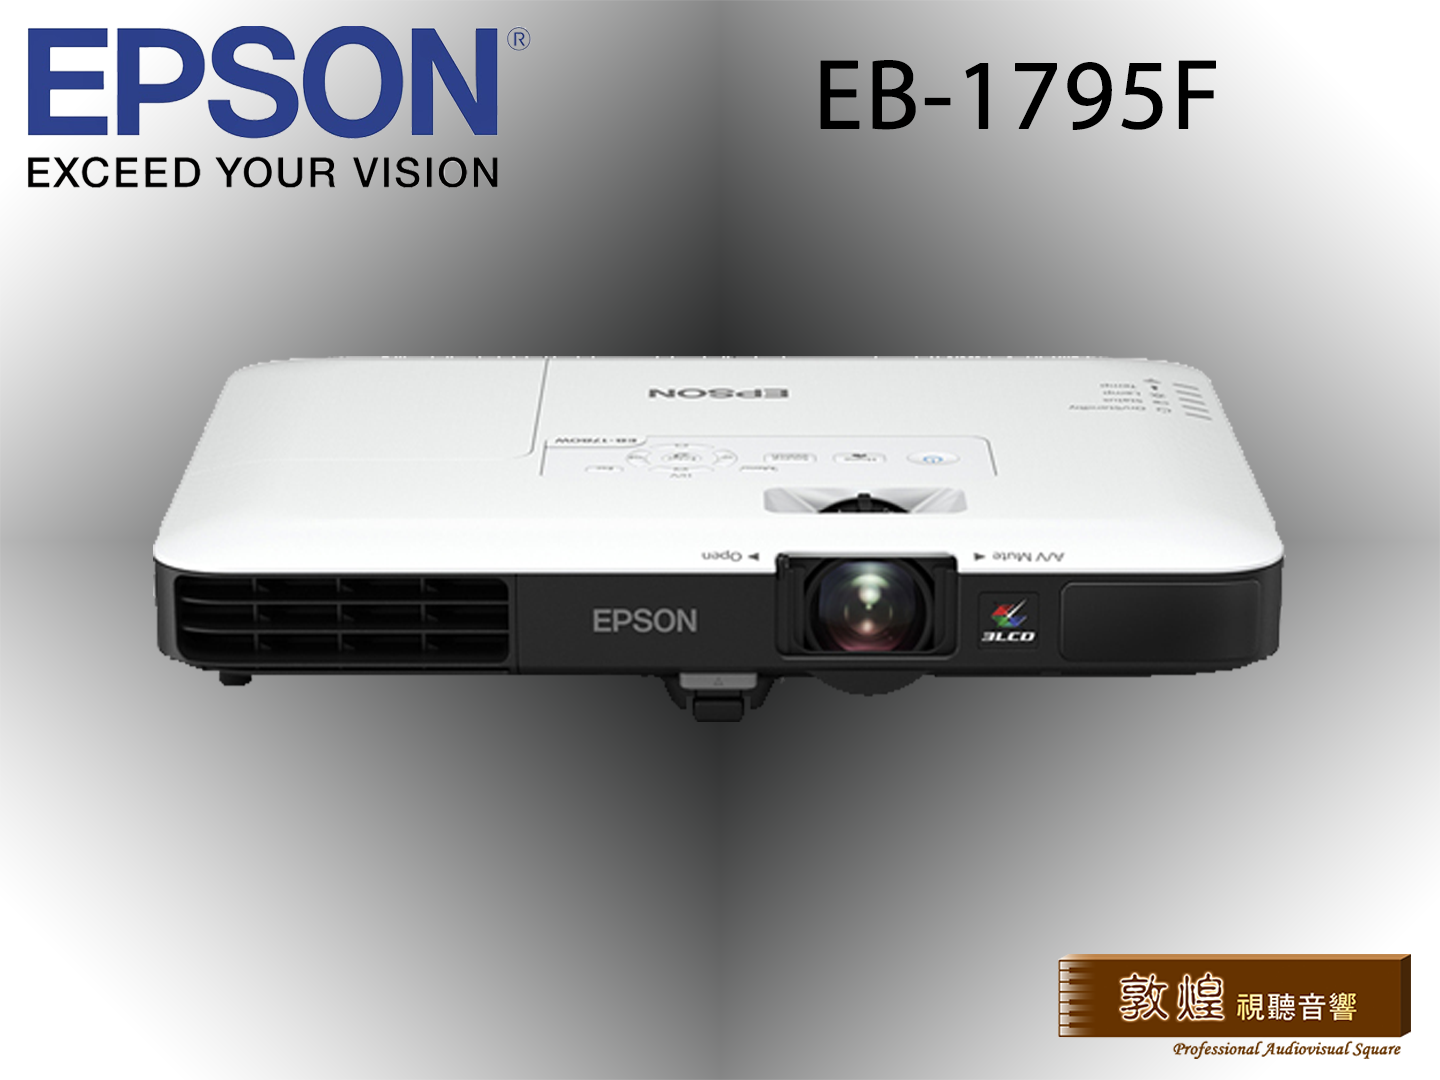 敦煌音響- EPSON EB-1795F 便攜型投影機